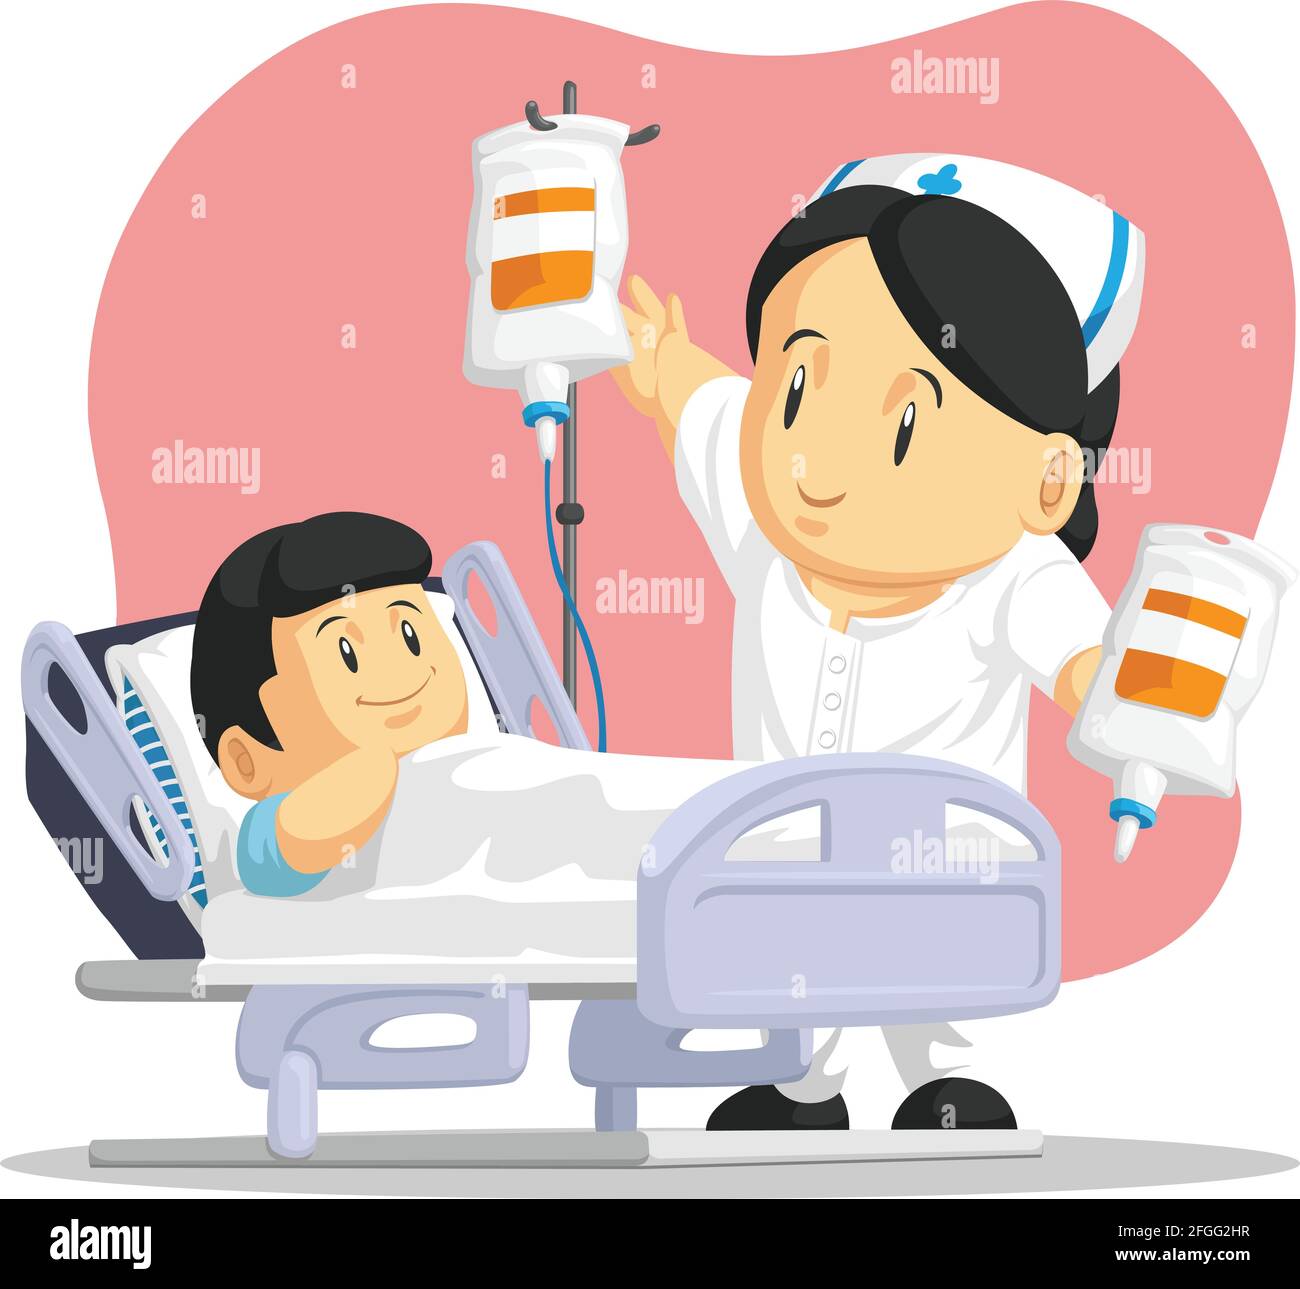 Nurse cartoon immagini e fotografie stock ad alta risoluzione - Alamy